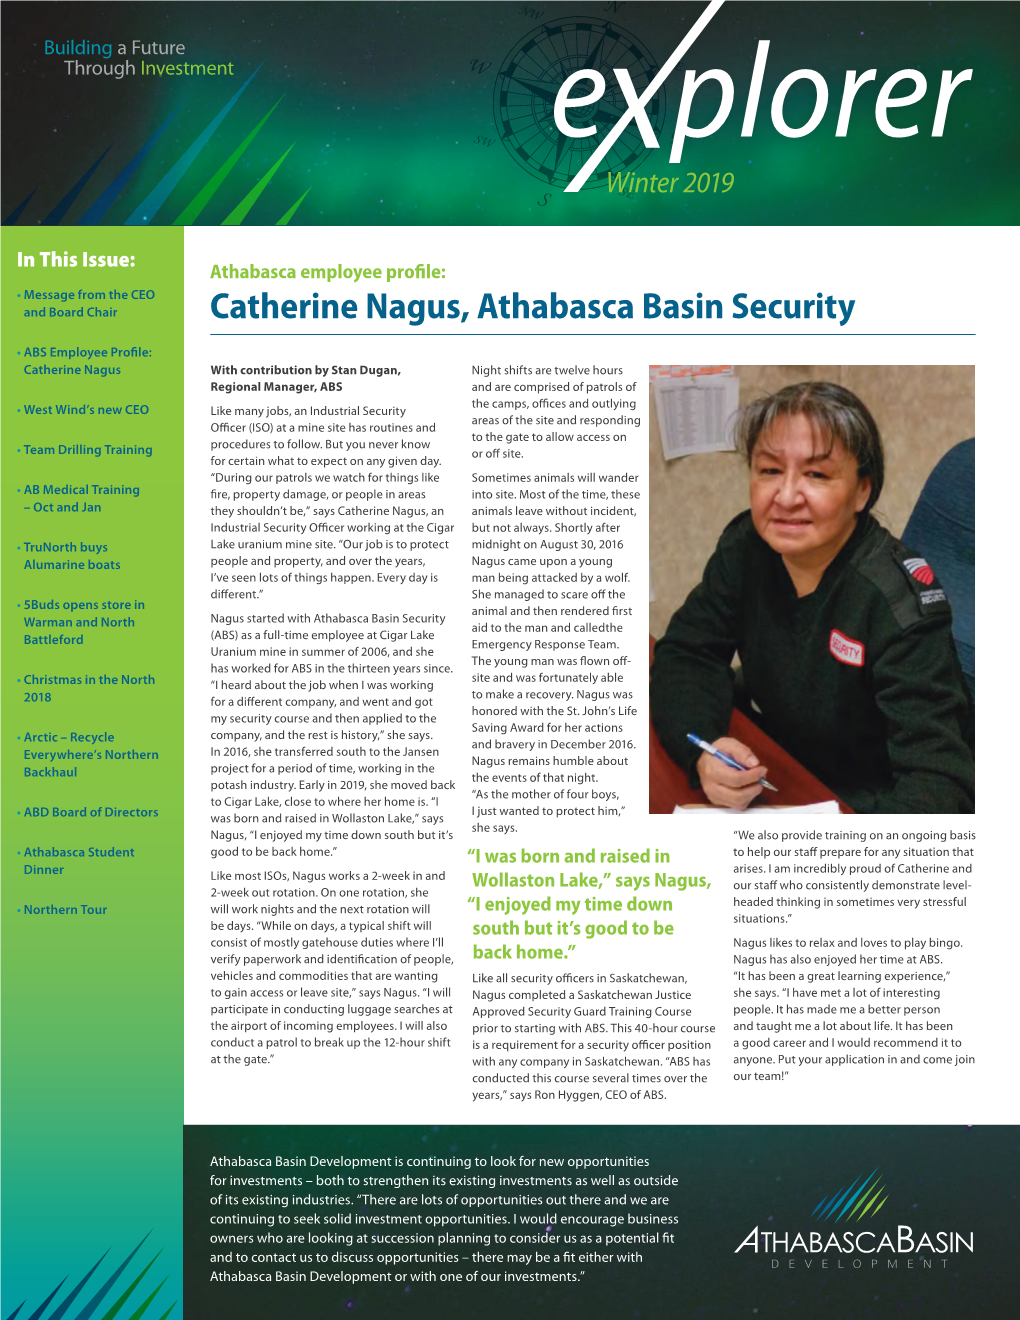 Catherine Nagus, Athabasca Basin Security